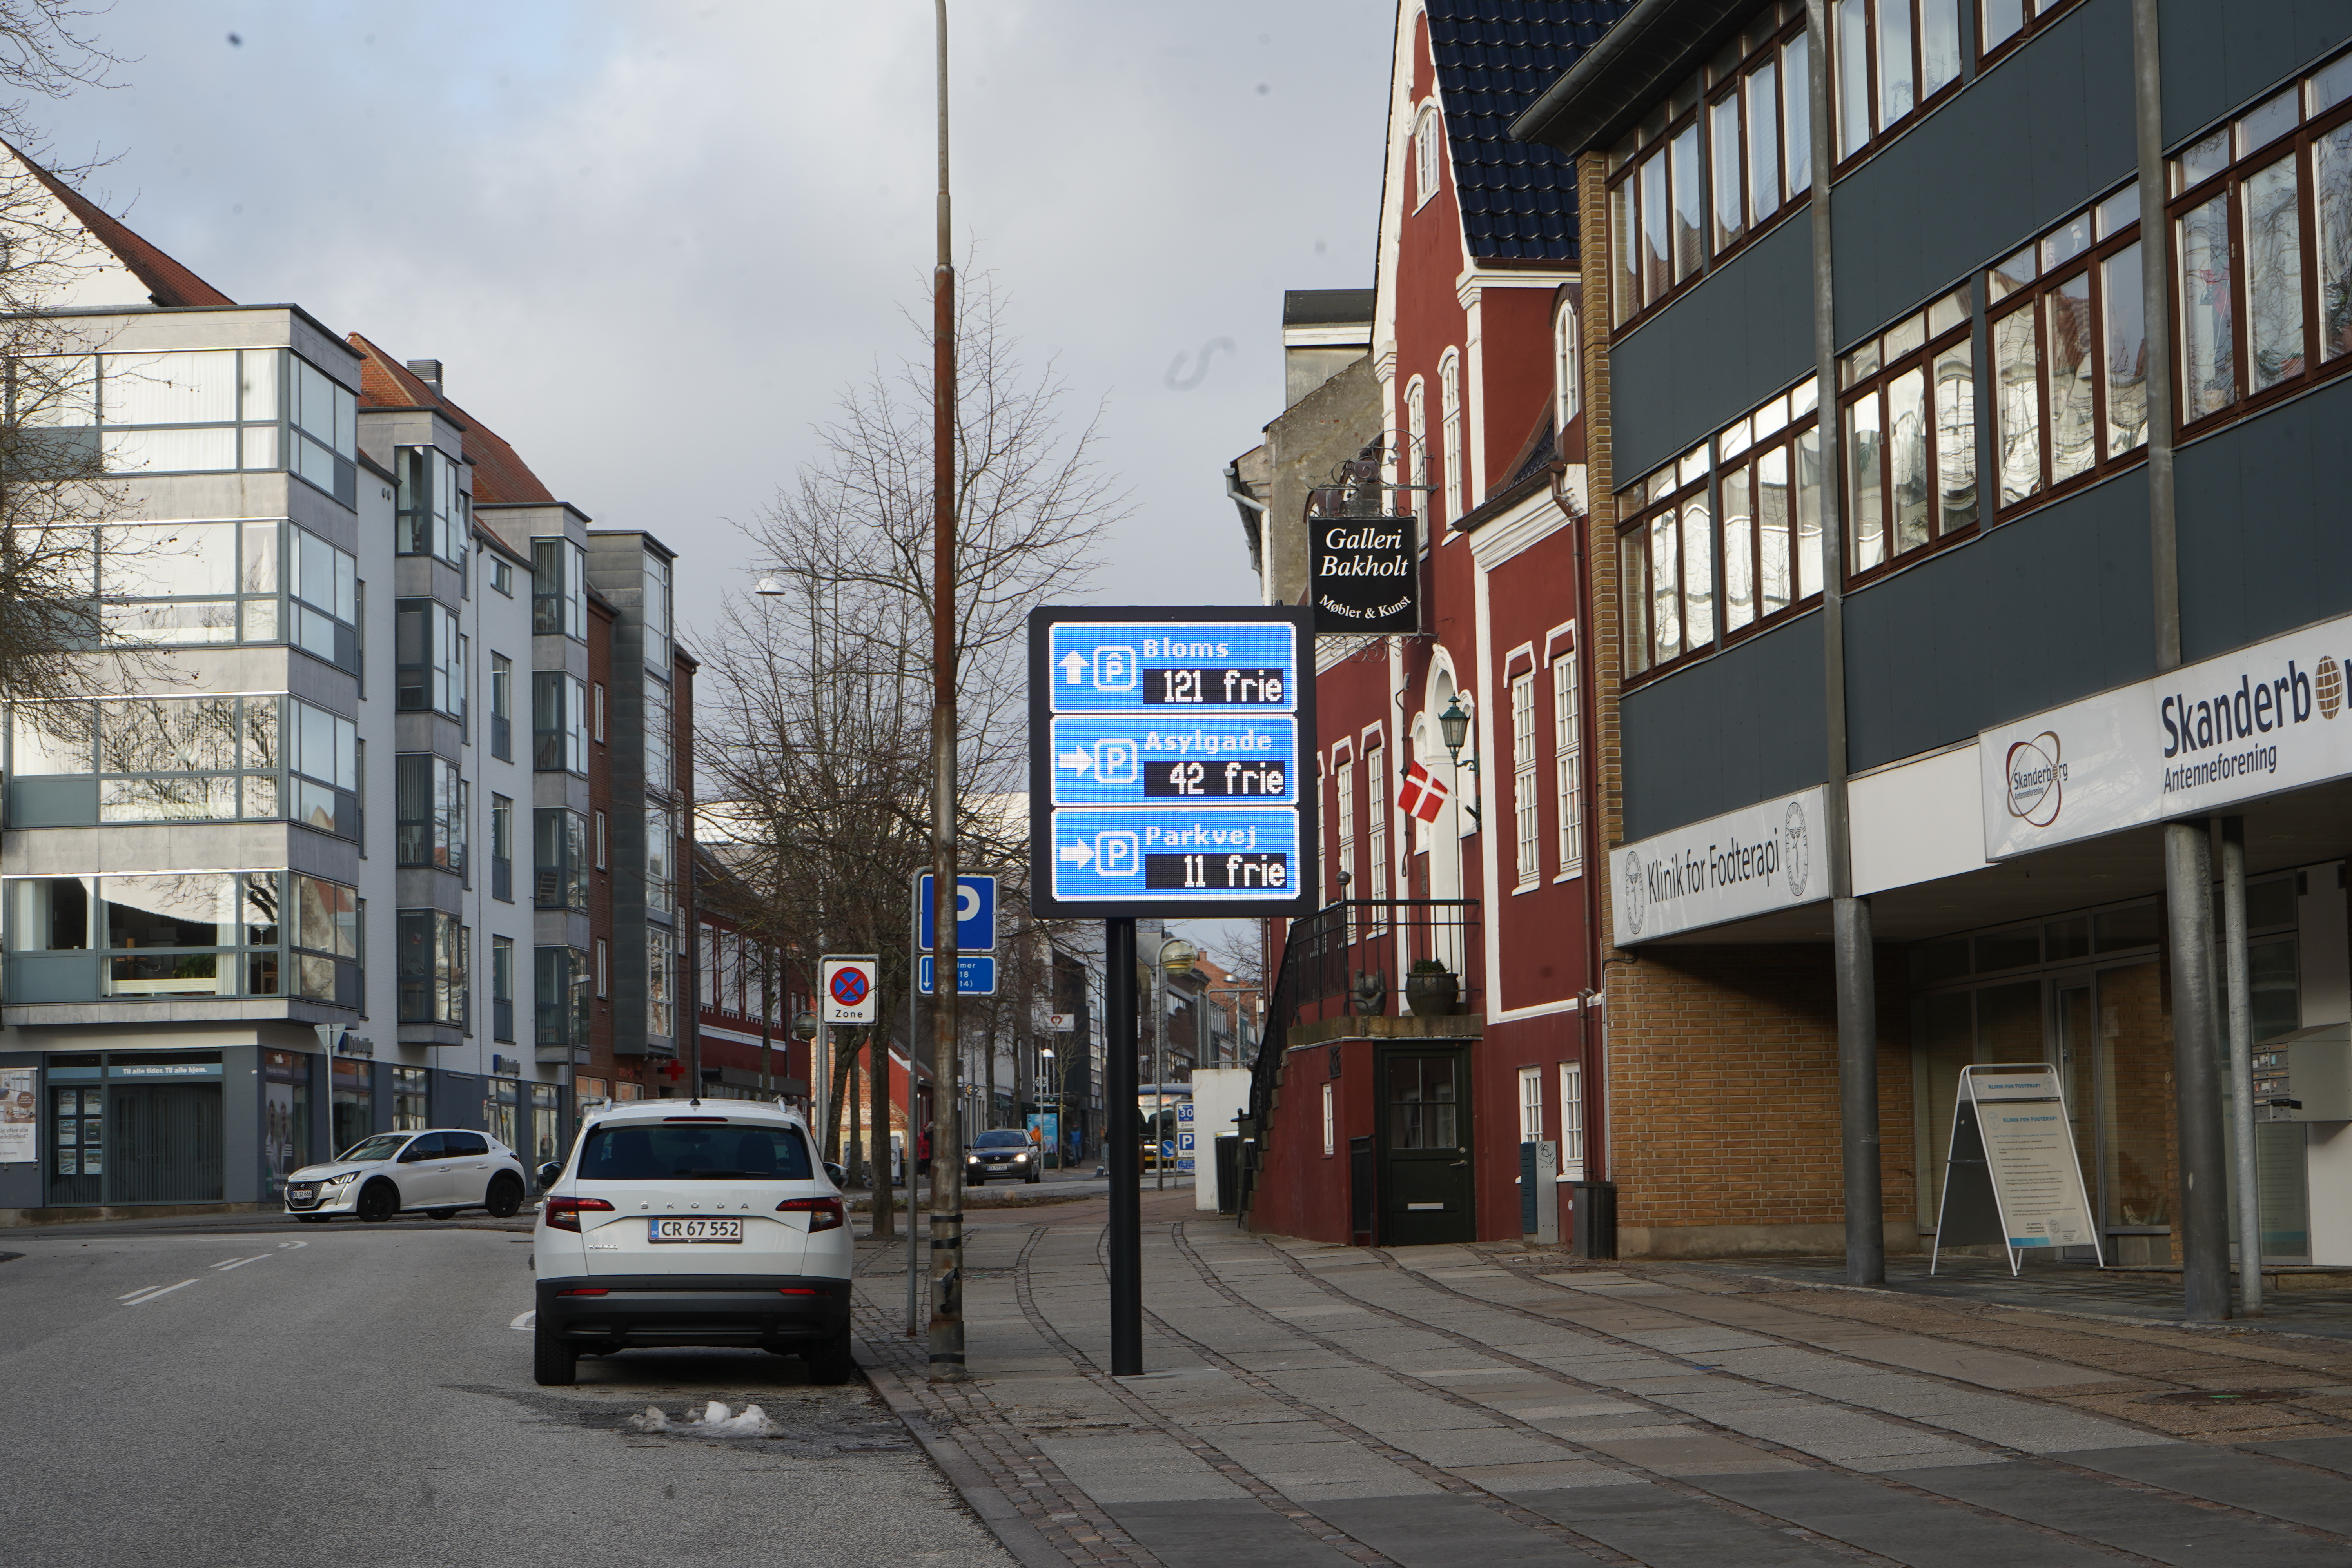 Skanderborg – Dinamarca da un paso hacia el futuro con su innovador proyecto de guía de aparcamiento con la ayuda de Urbiotica 